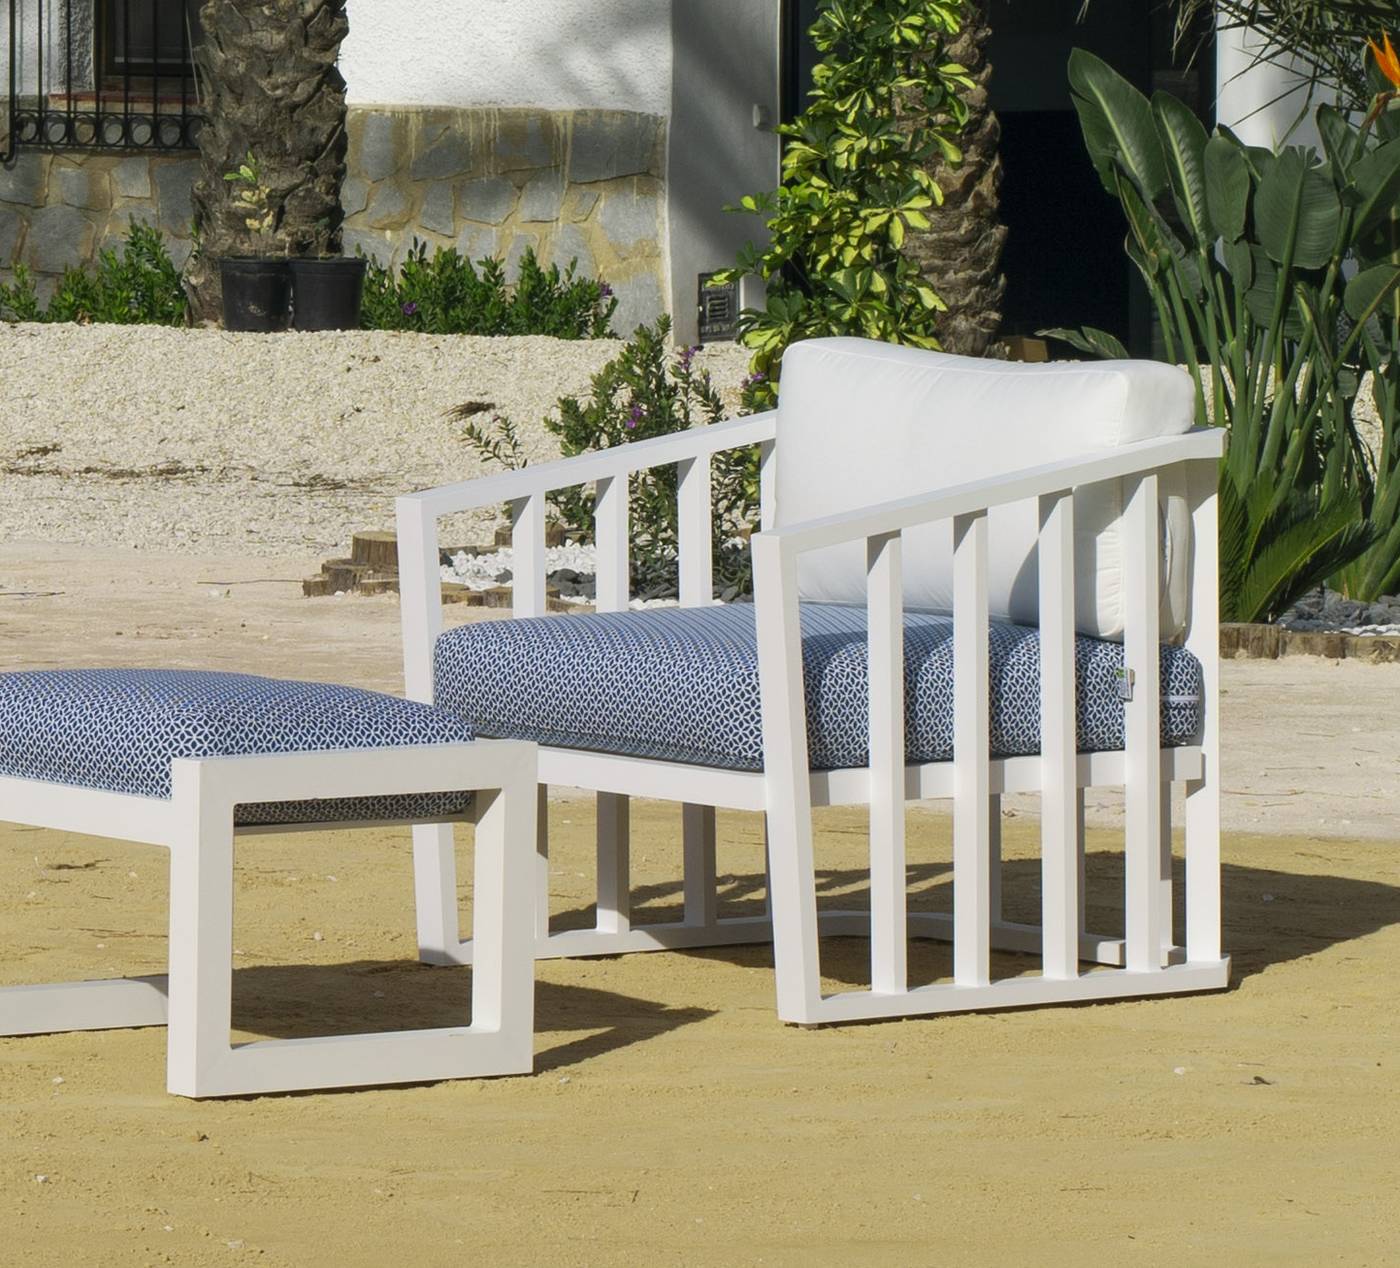 Set Aluminio Birmania-9 - Conjunto confort aluminio: 1 sofá 2 plazas + 2 sillones + 1 mesa de centro + 2 reposapiés. Disponible en color blanco o antracita.